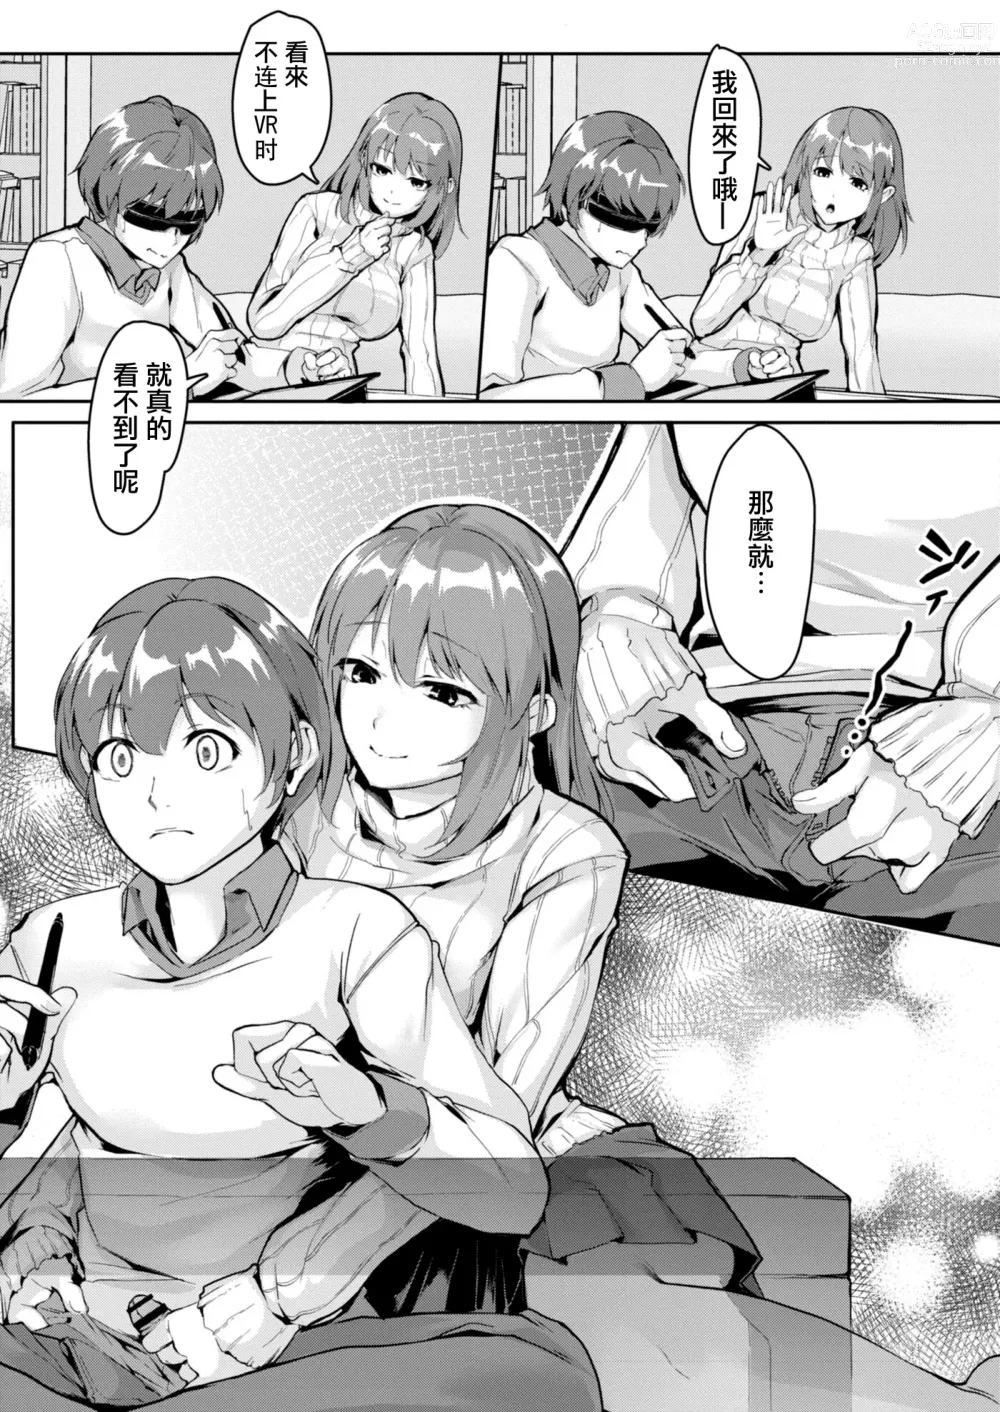 Page 5 of manga 突發邪念